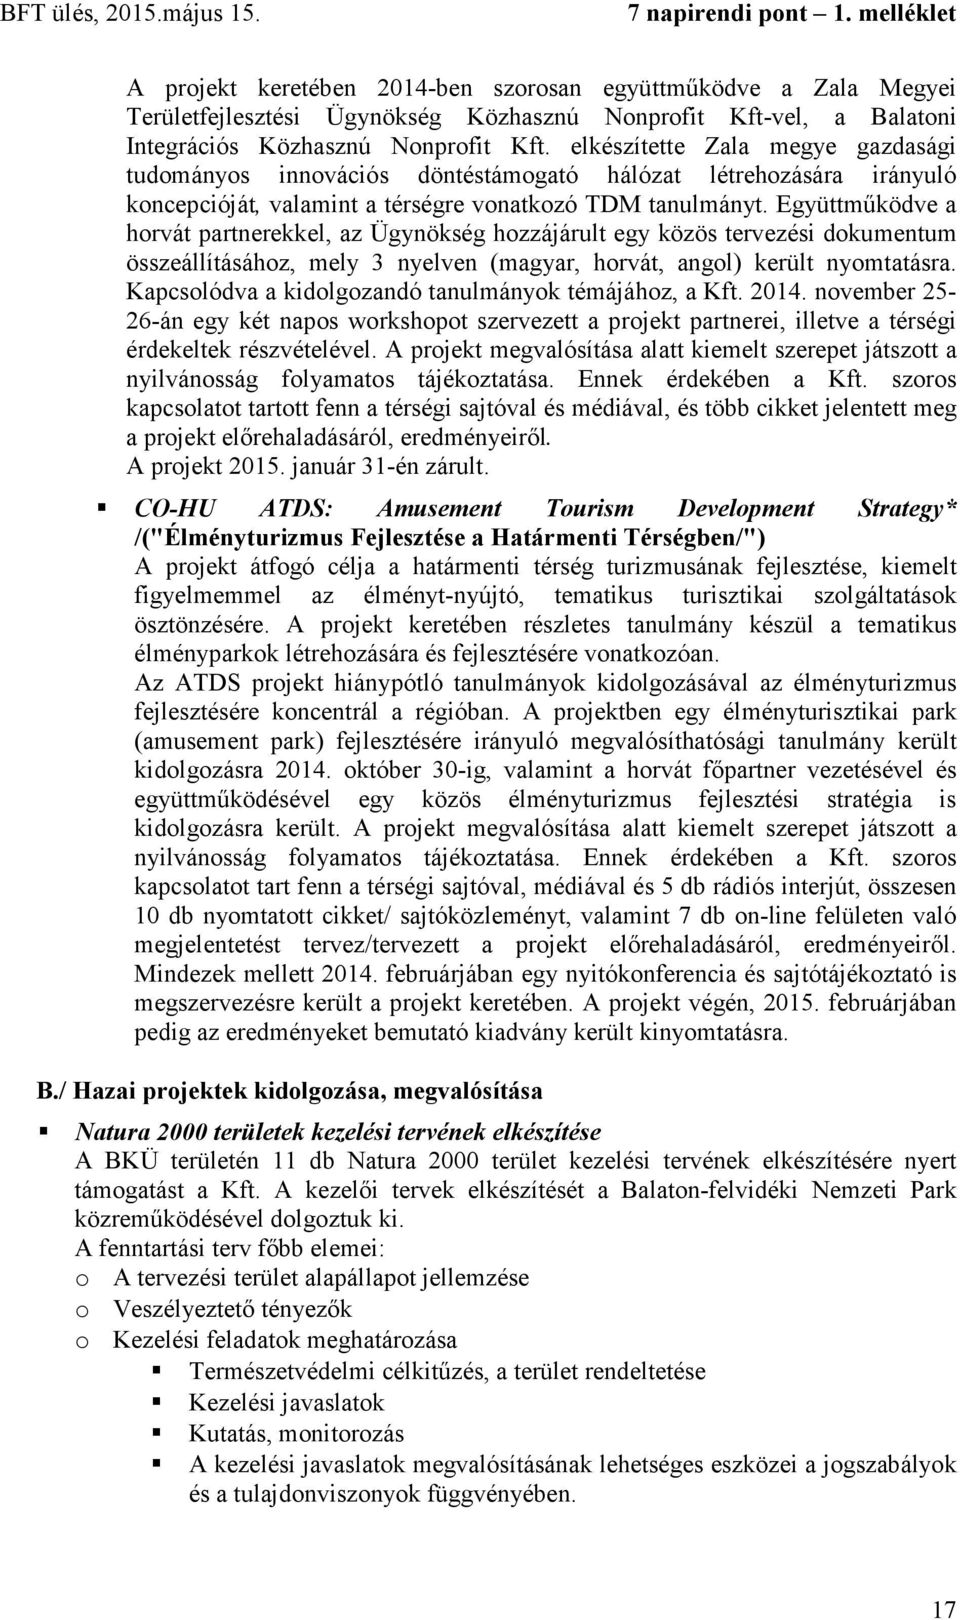 Együttműködve a horvát partnerekkel, az Ügynökség hozzájárult egy közös tervezési dokumentum összeállításához, mely 3 nyelven (magyar, horvát, angol) került nyomtatásra.